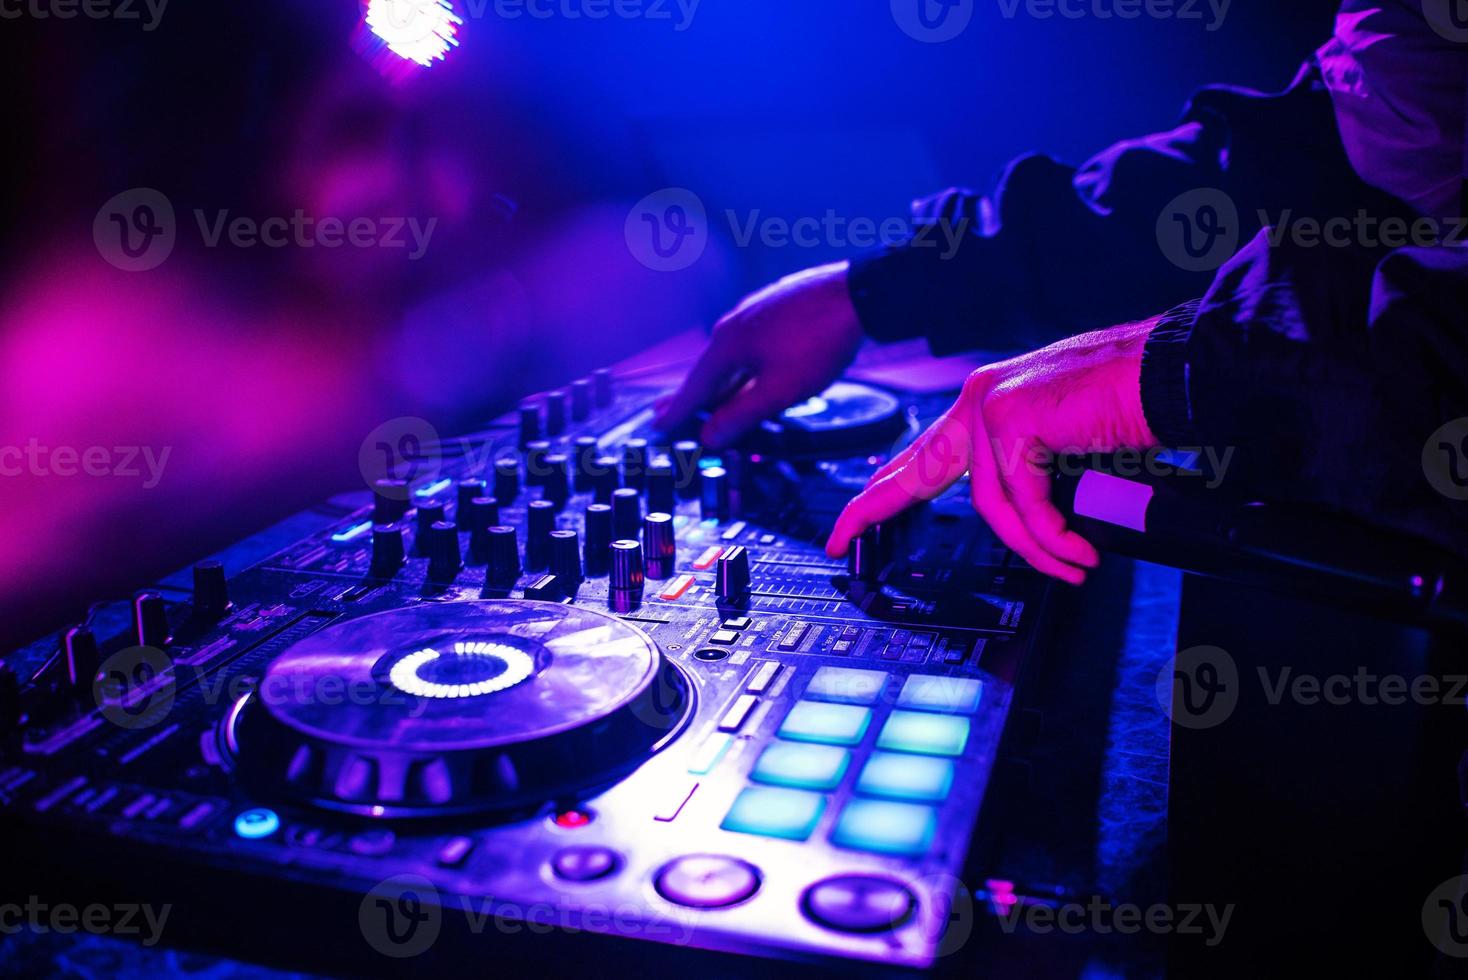 dj-konsole zum mischen von musik mit den händen und mit verschwommenen menschen, die auf einer nachtclubparty tanzen foto